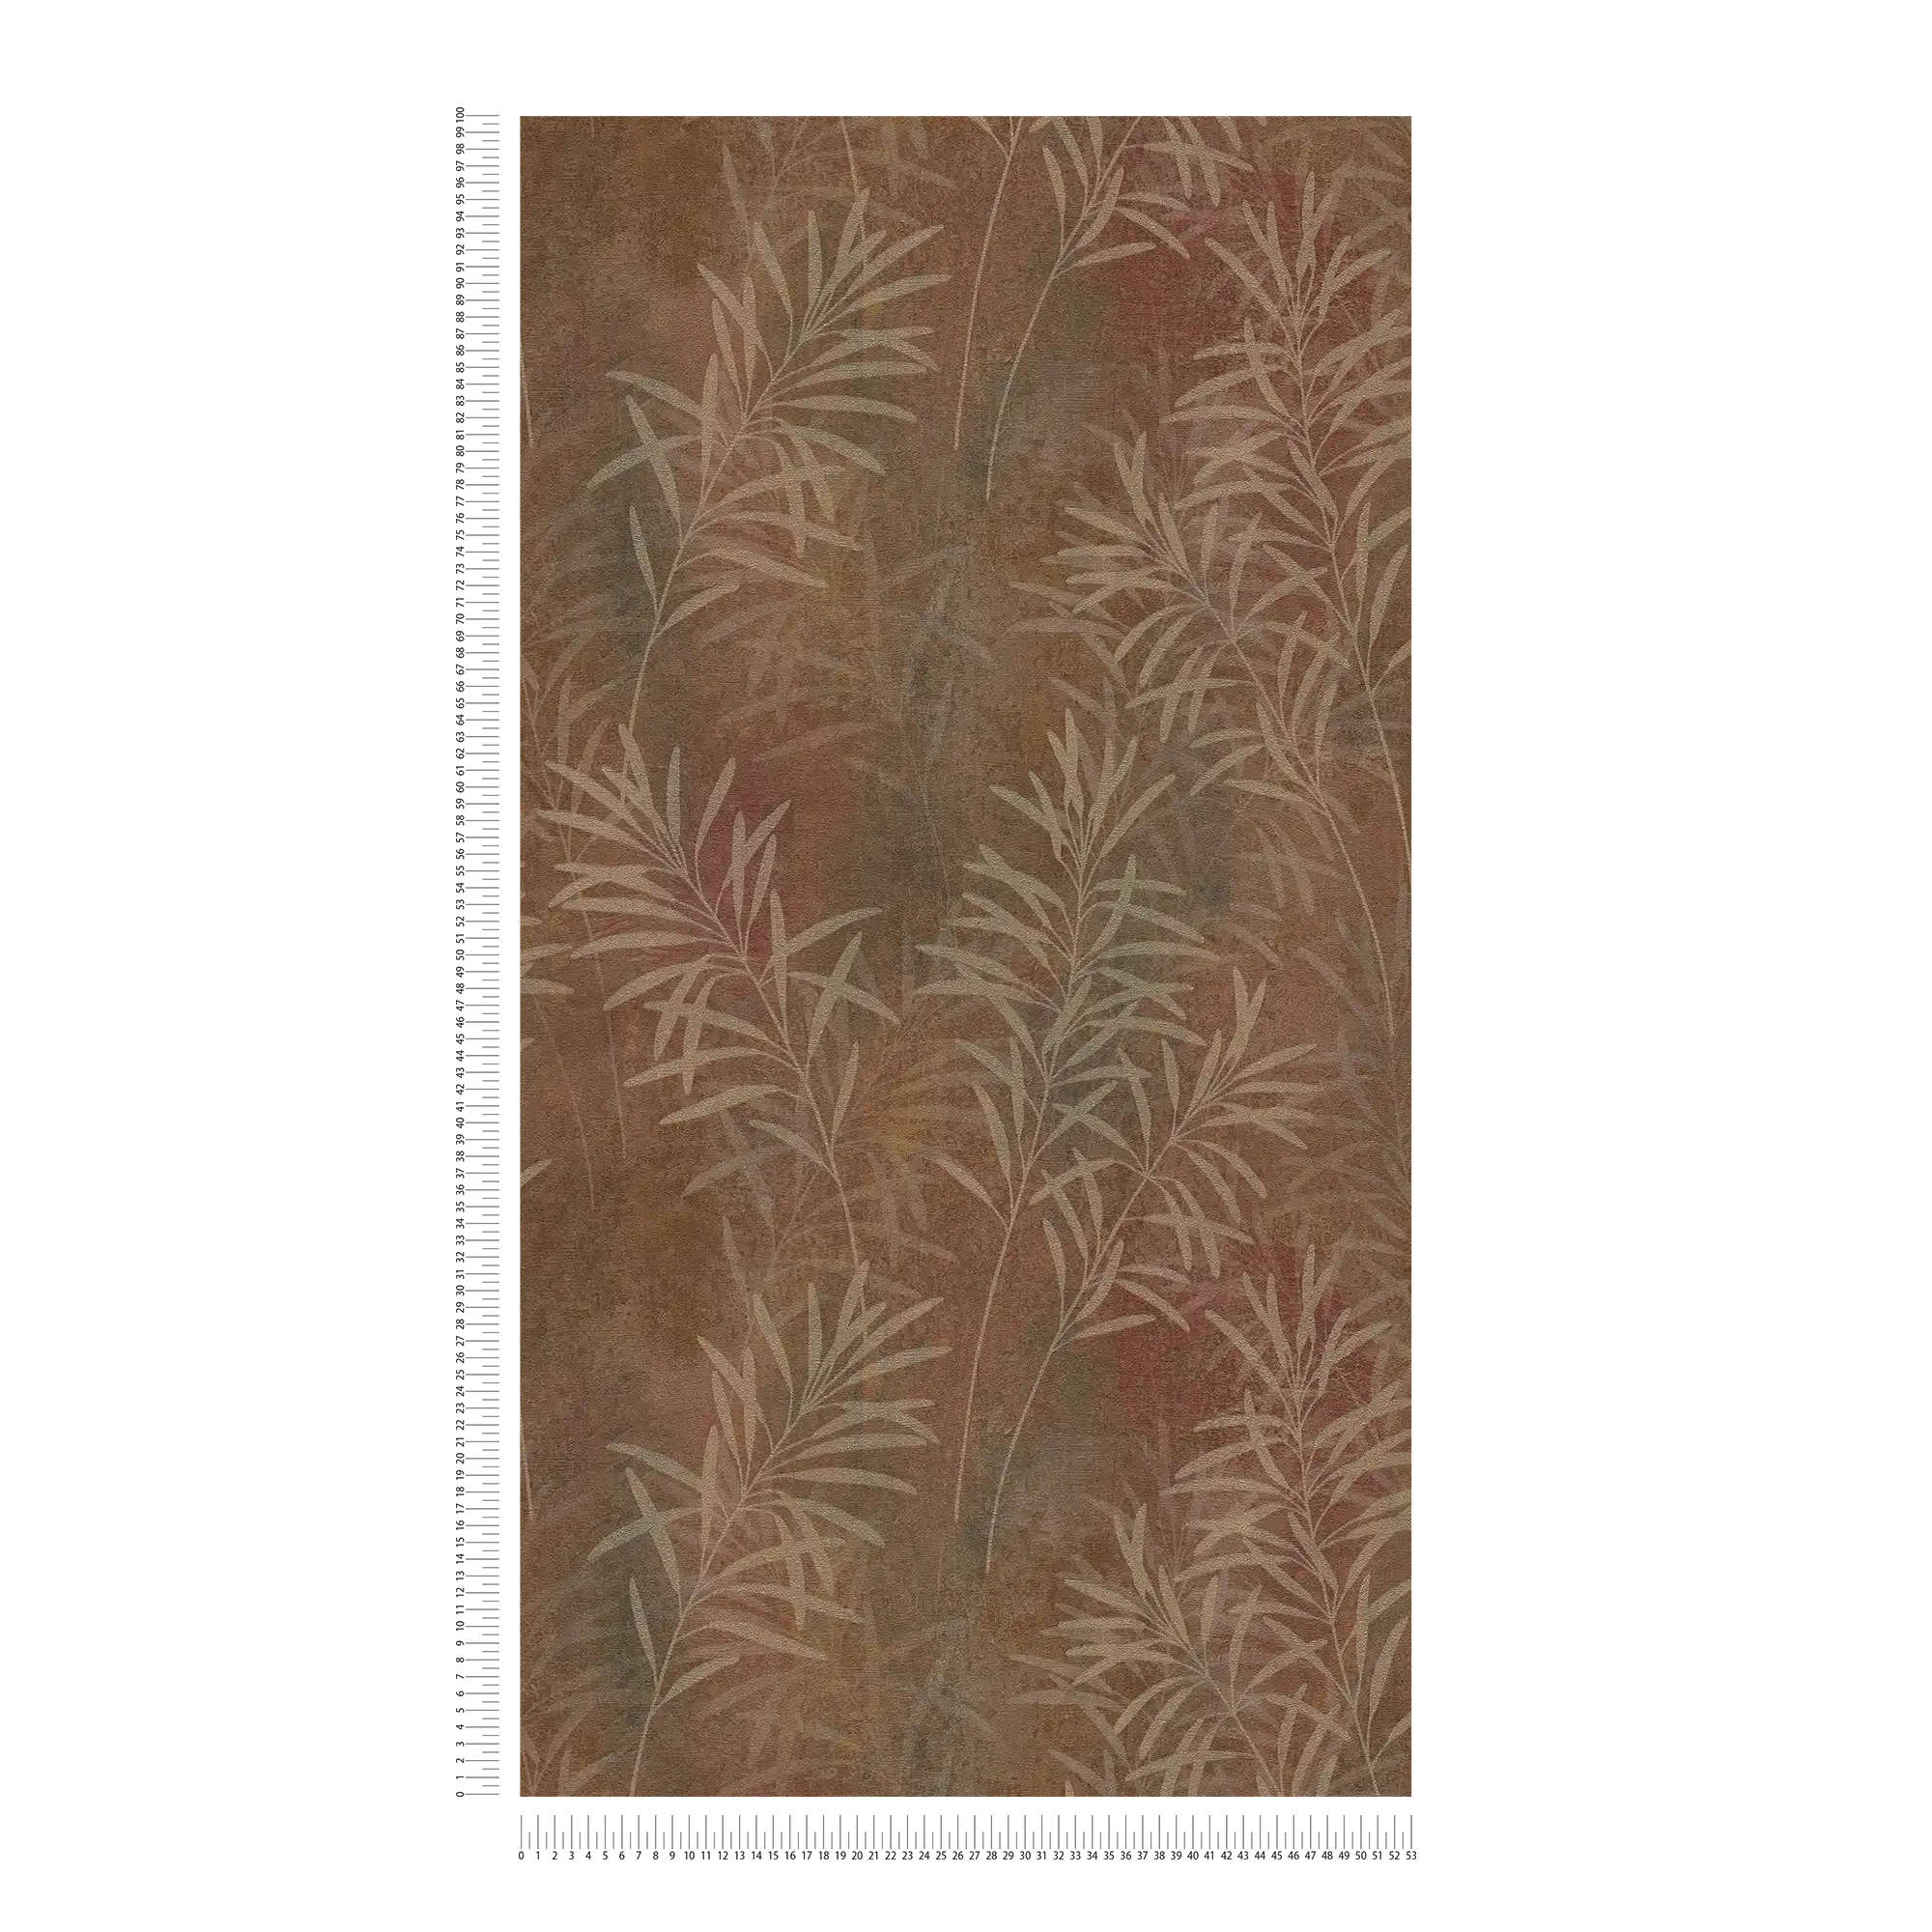             Papier peint intissé floral avec motif d'herbes et texture fine - marron, beige, métallique
        